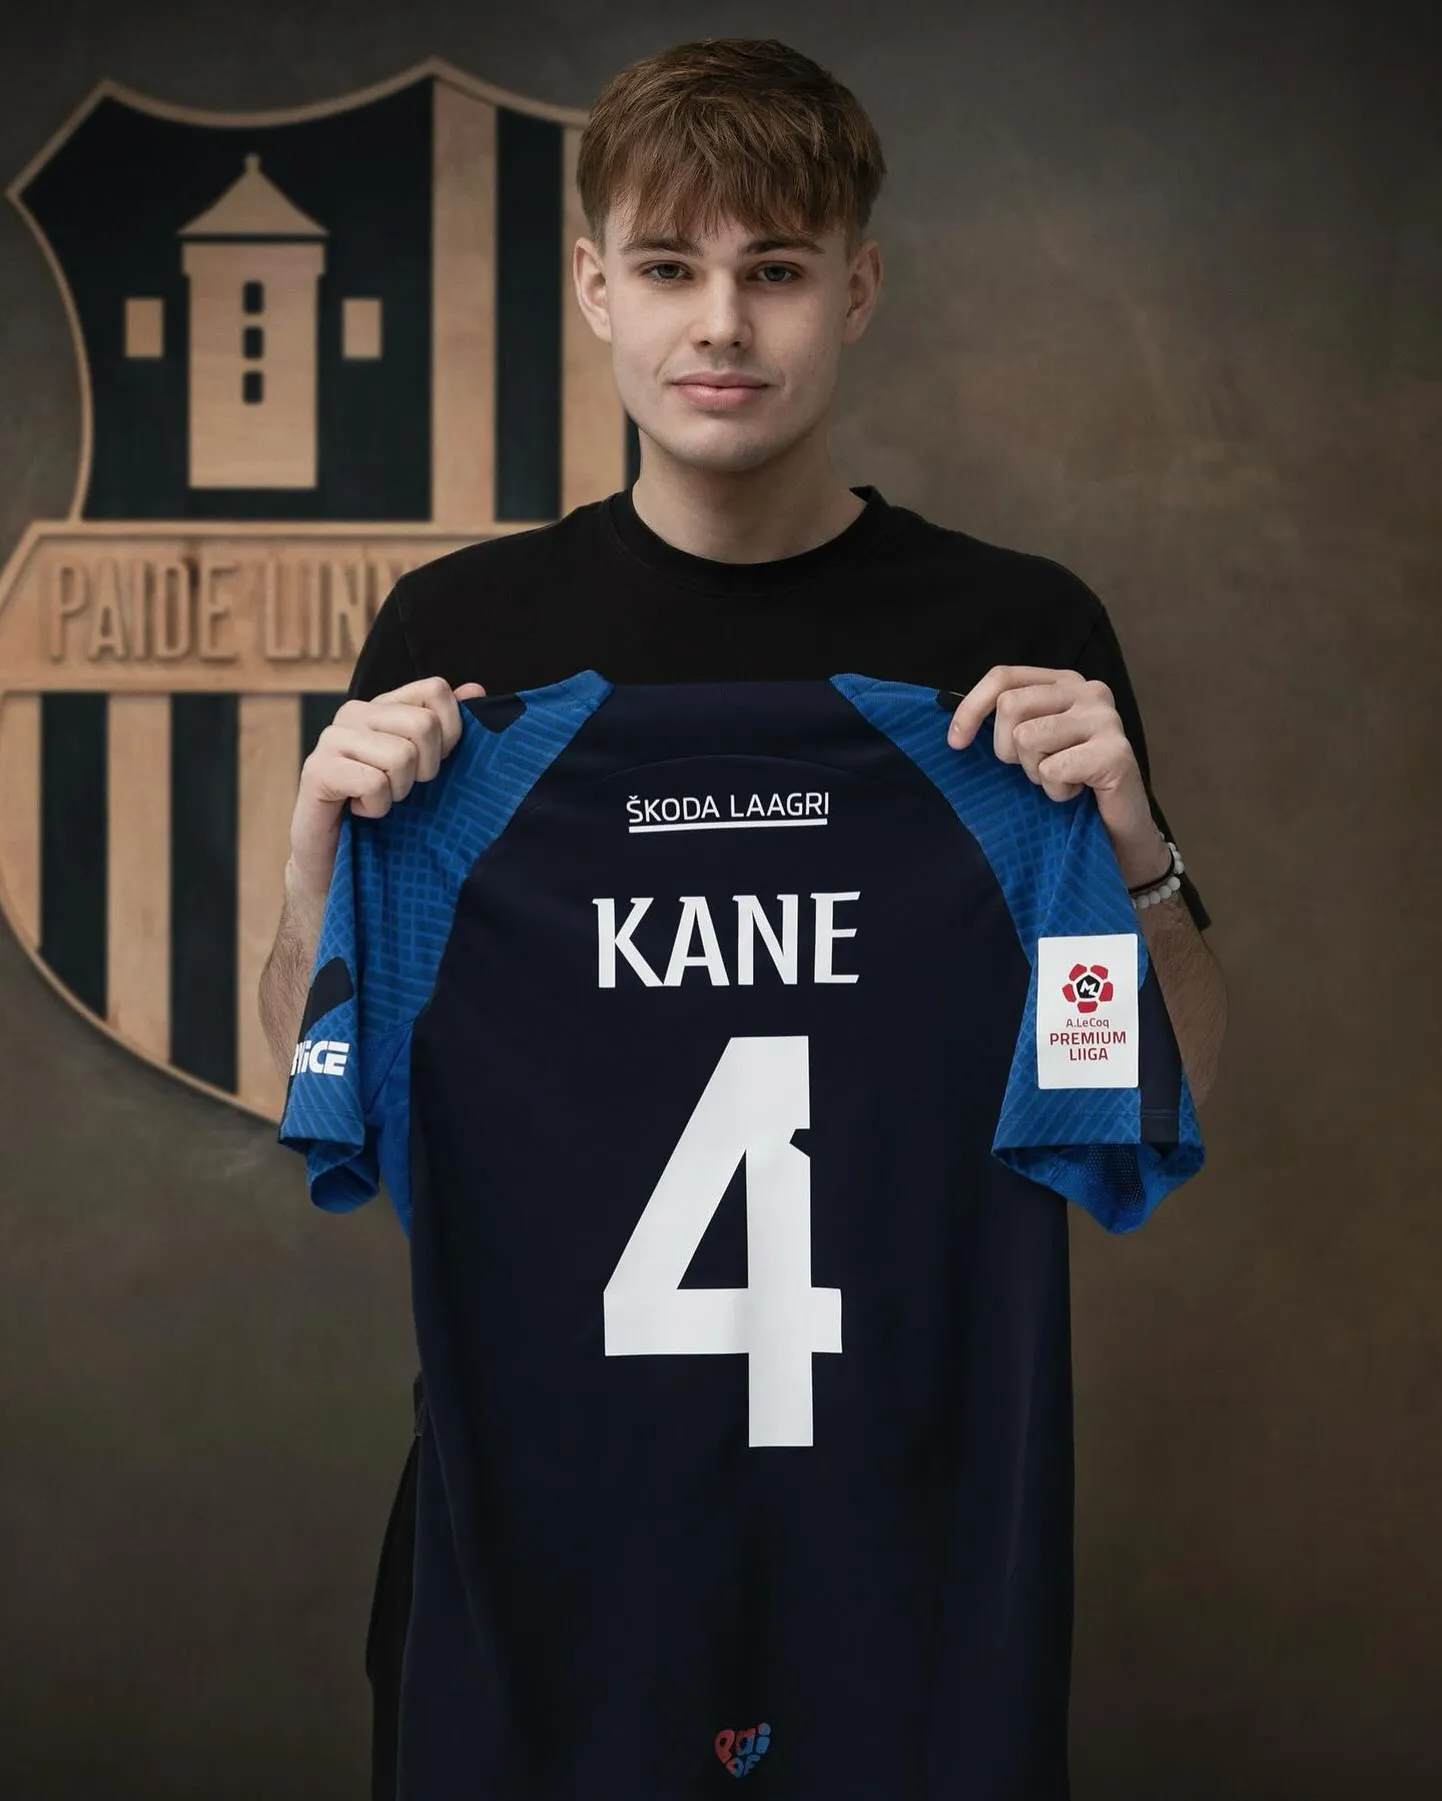 Paide Linnameeskond omandas Itaalia tippklubilt Roma Laziolt 19-aastase keskkaitsja Robin Kane mängijaõigused.